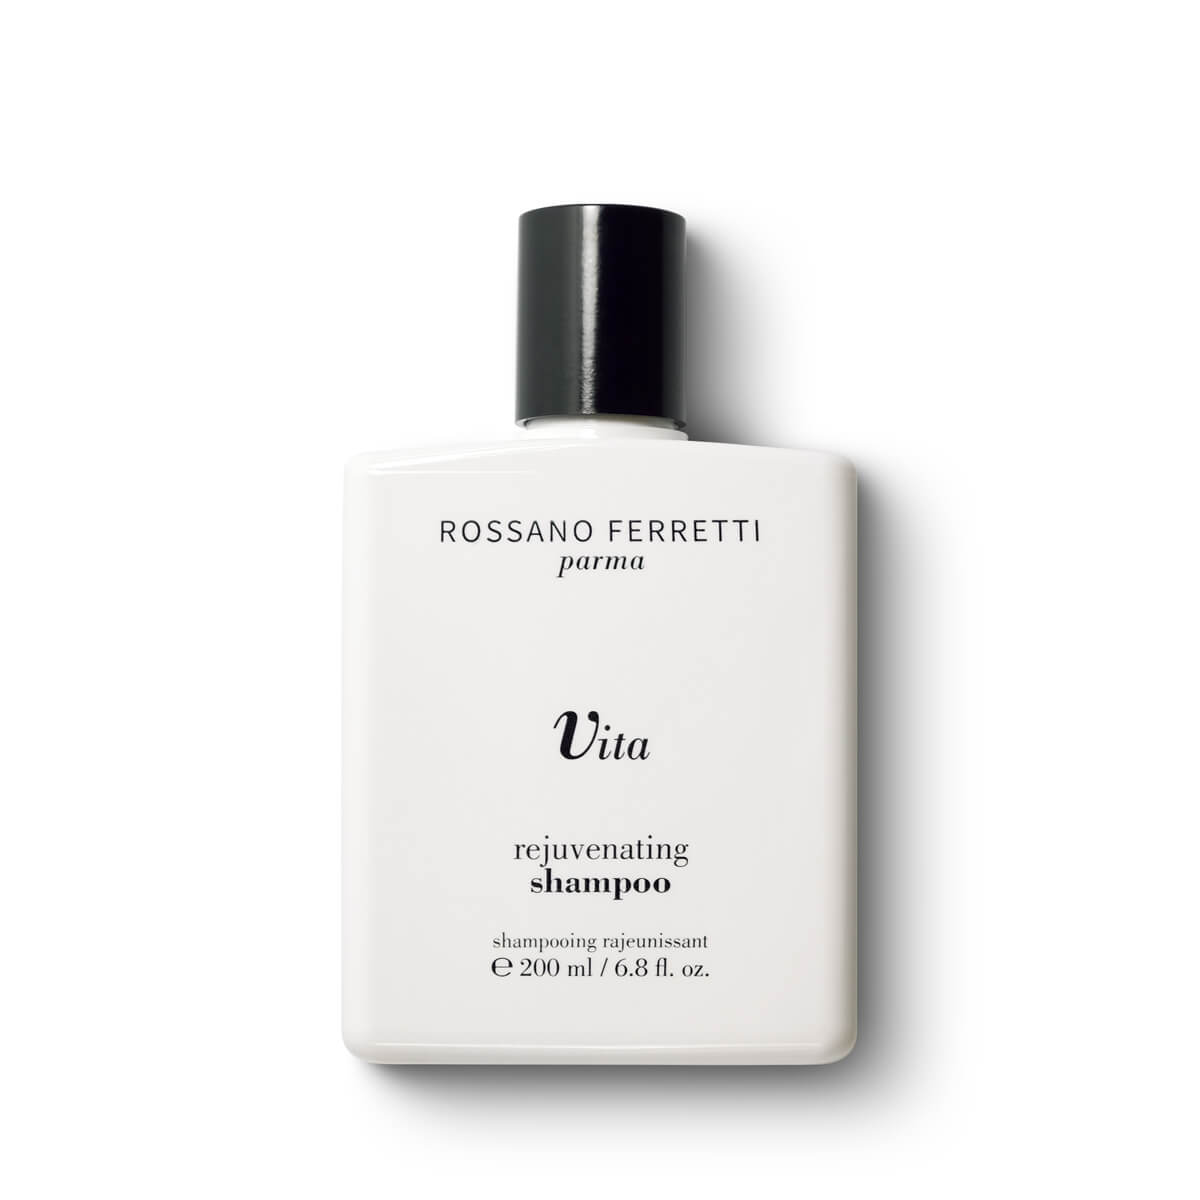 Rossano Ferretti Vita Rejuvenating Shampoo 200 ml / 6.8 fl. oz.